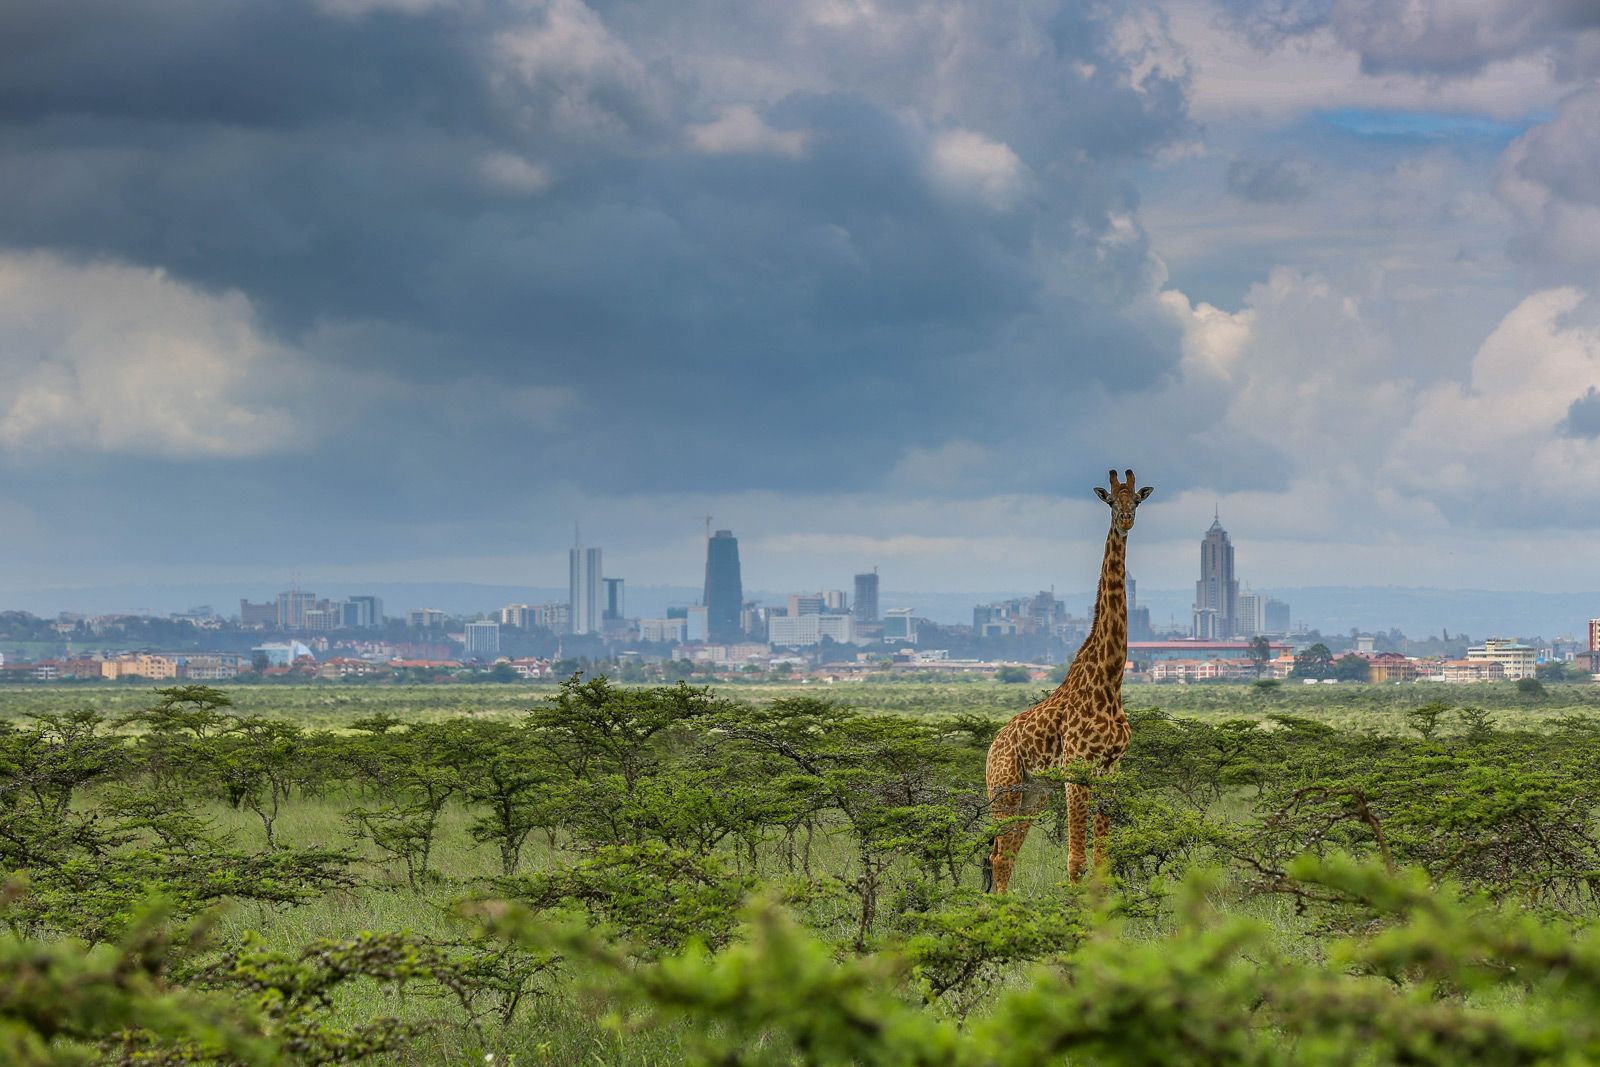 tourism news in kenya